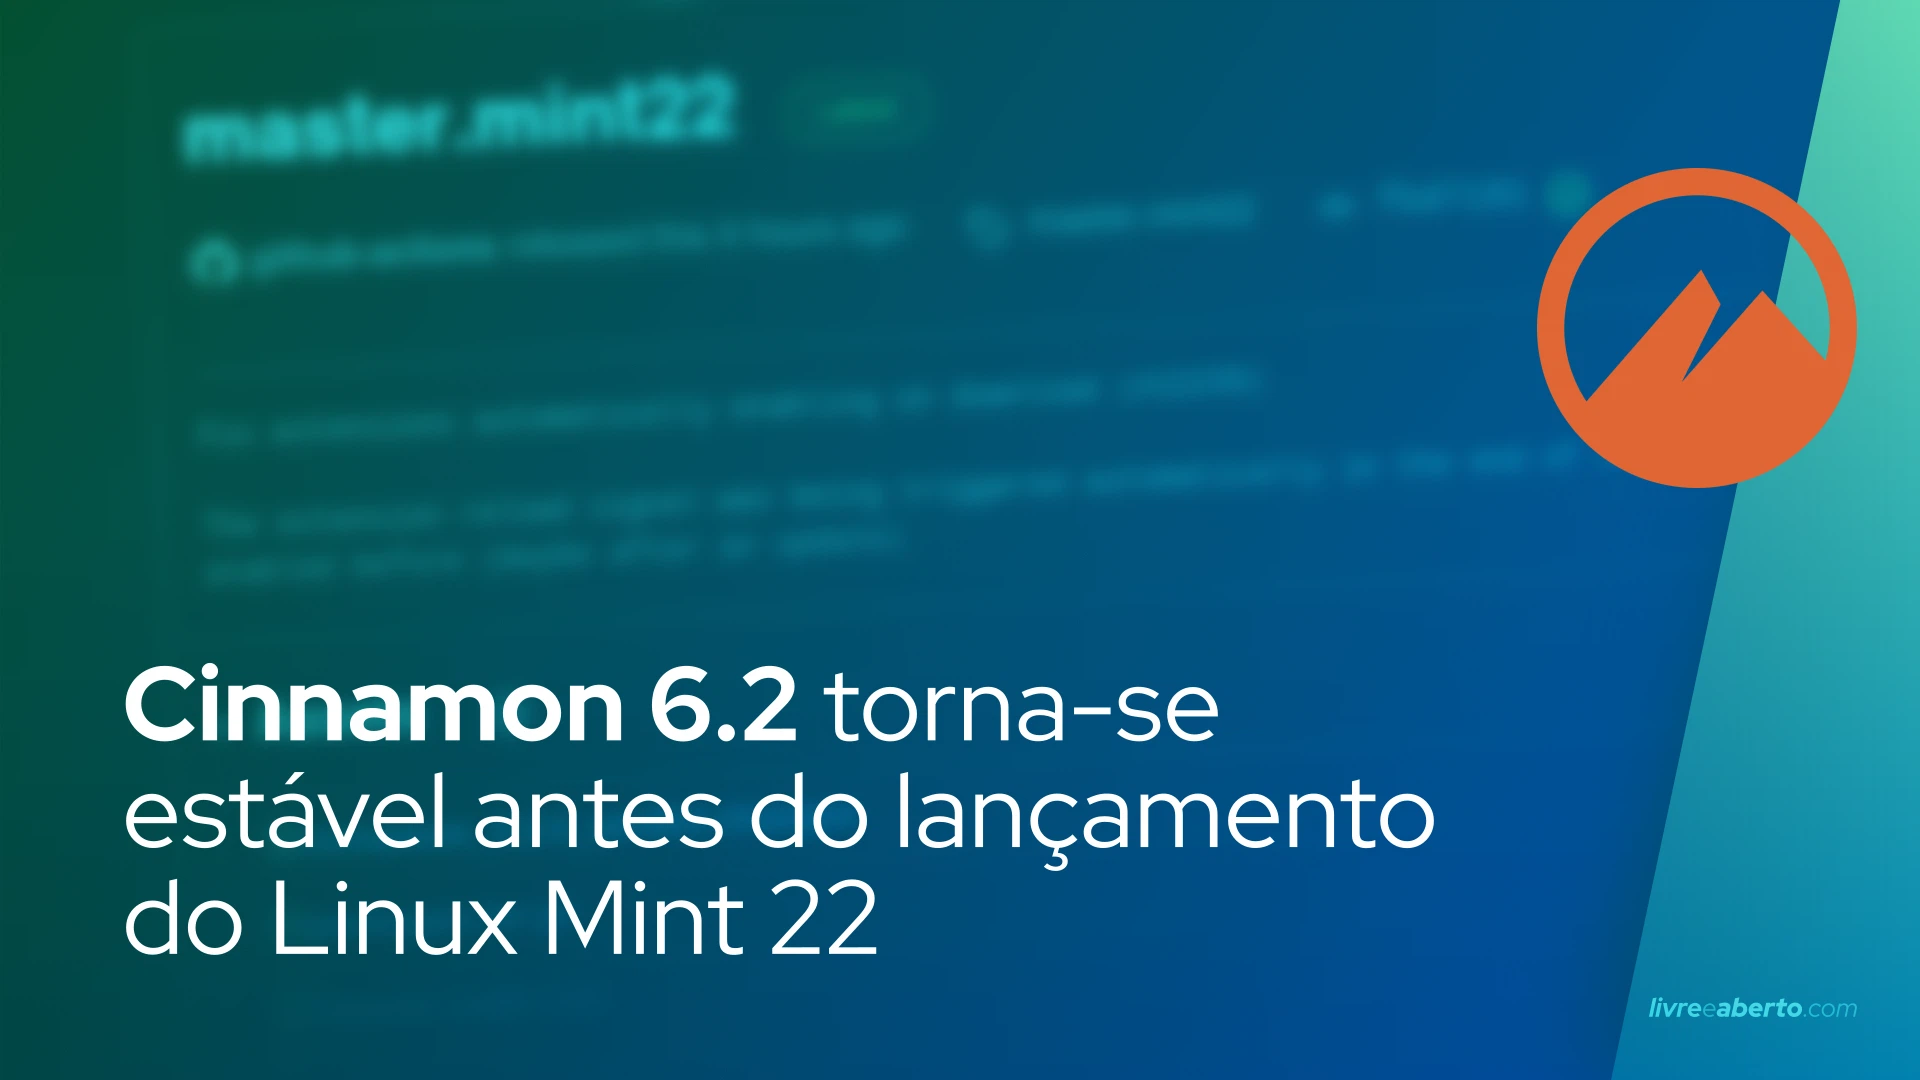 Cinnamon 6.2 torna-se estável antes do lançamento do Linux Mint 22